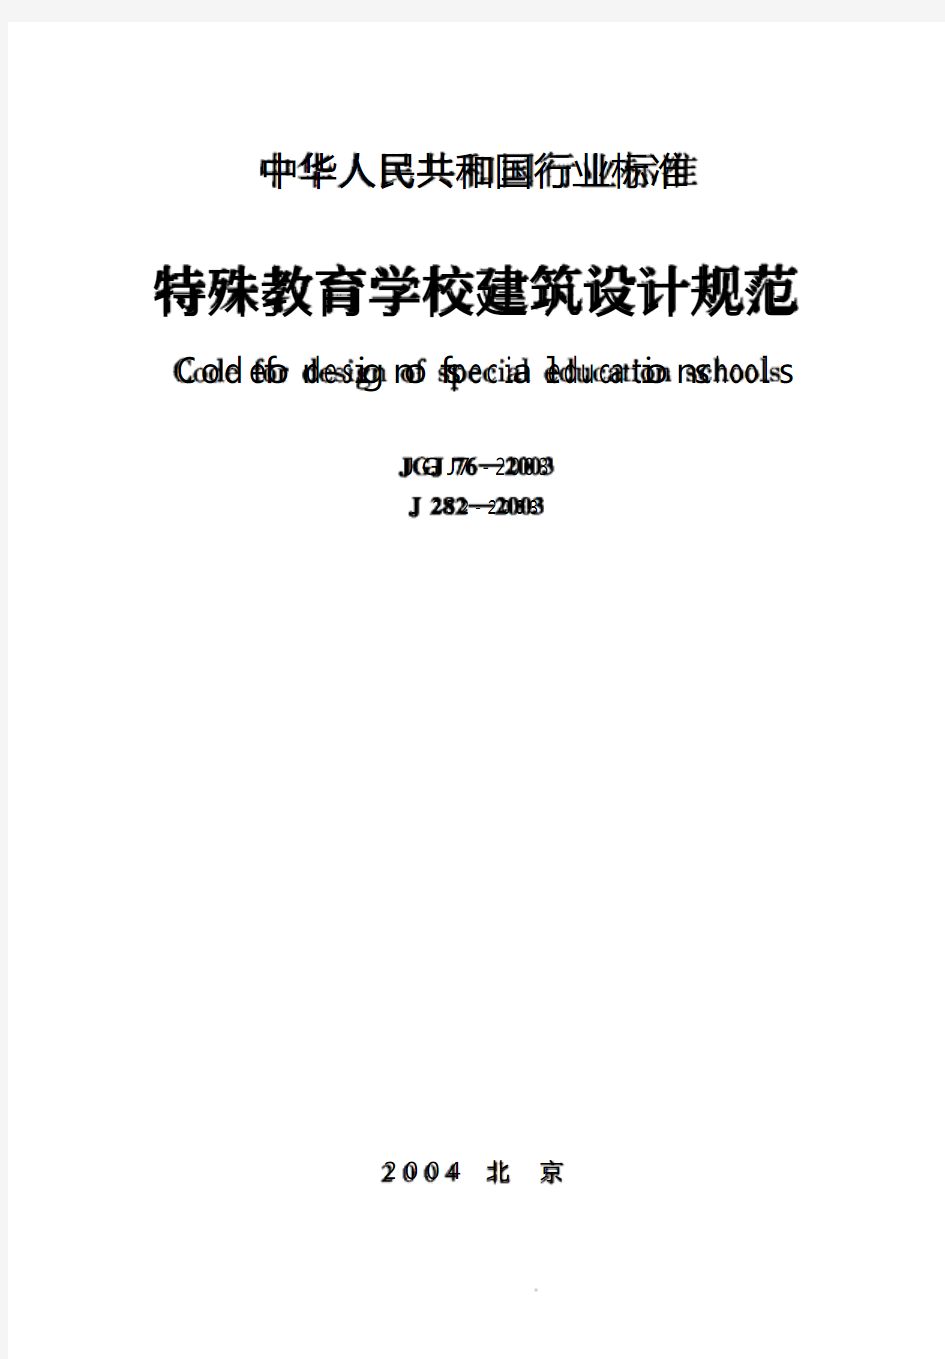 《特殊教育学校建筑设计规范》14_JGJ76-2003